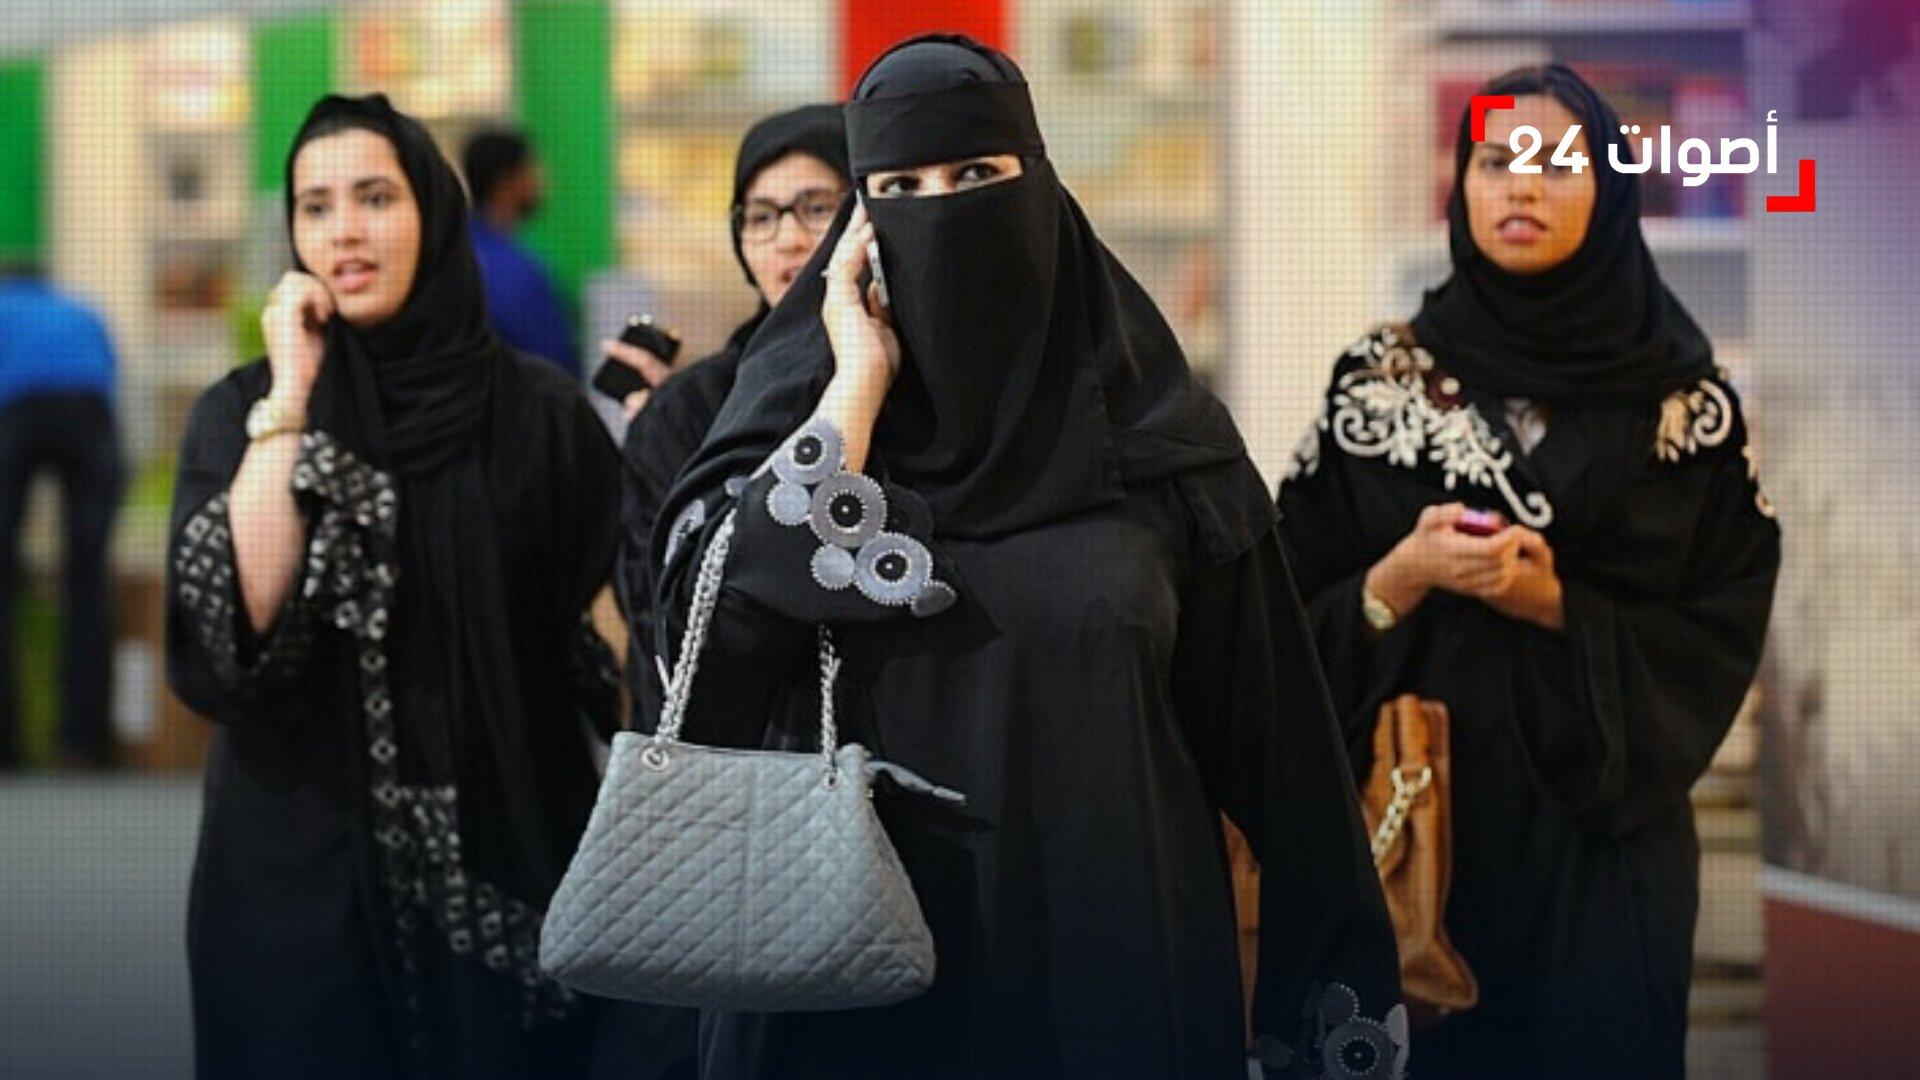 السعودية تسمح بأداء مناسك العمرة دون محرم للنساء